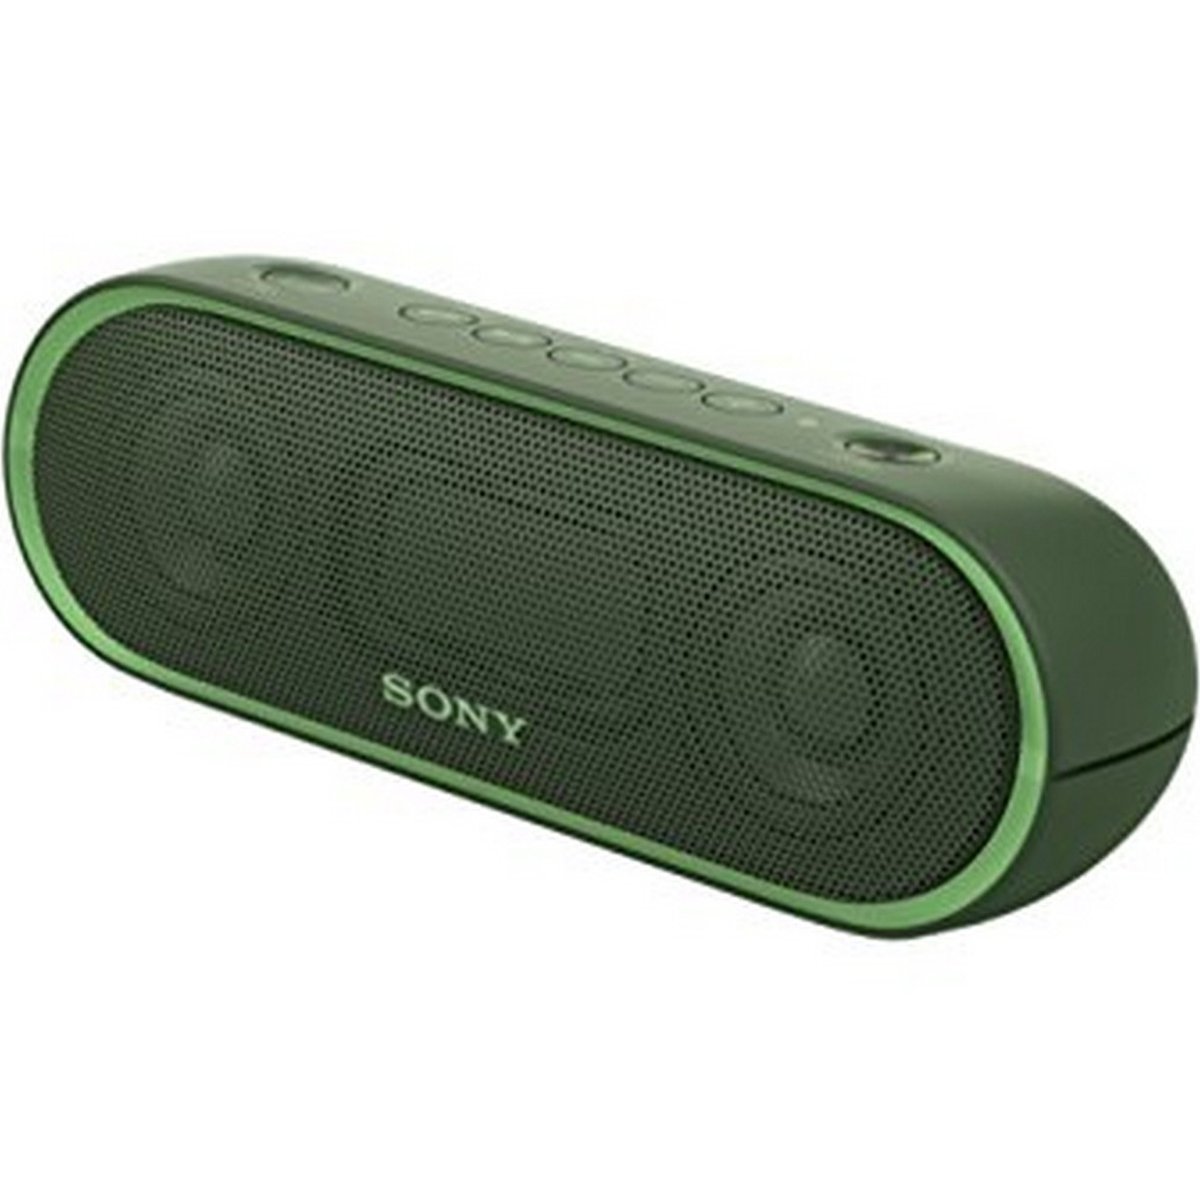 Sony Portable Wireless Bluetooth Speaker SRS-XB20 Green